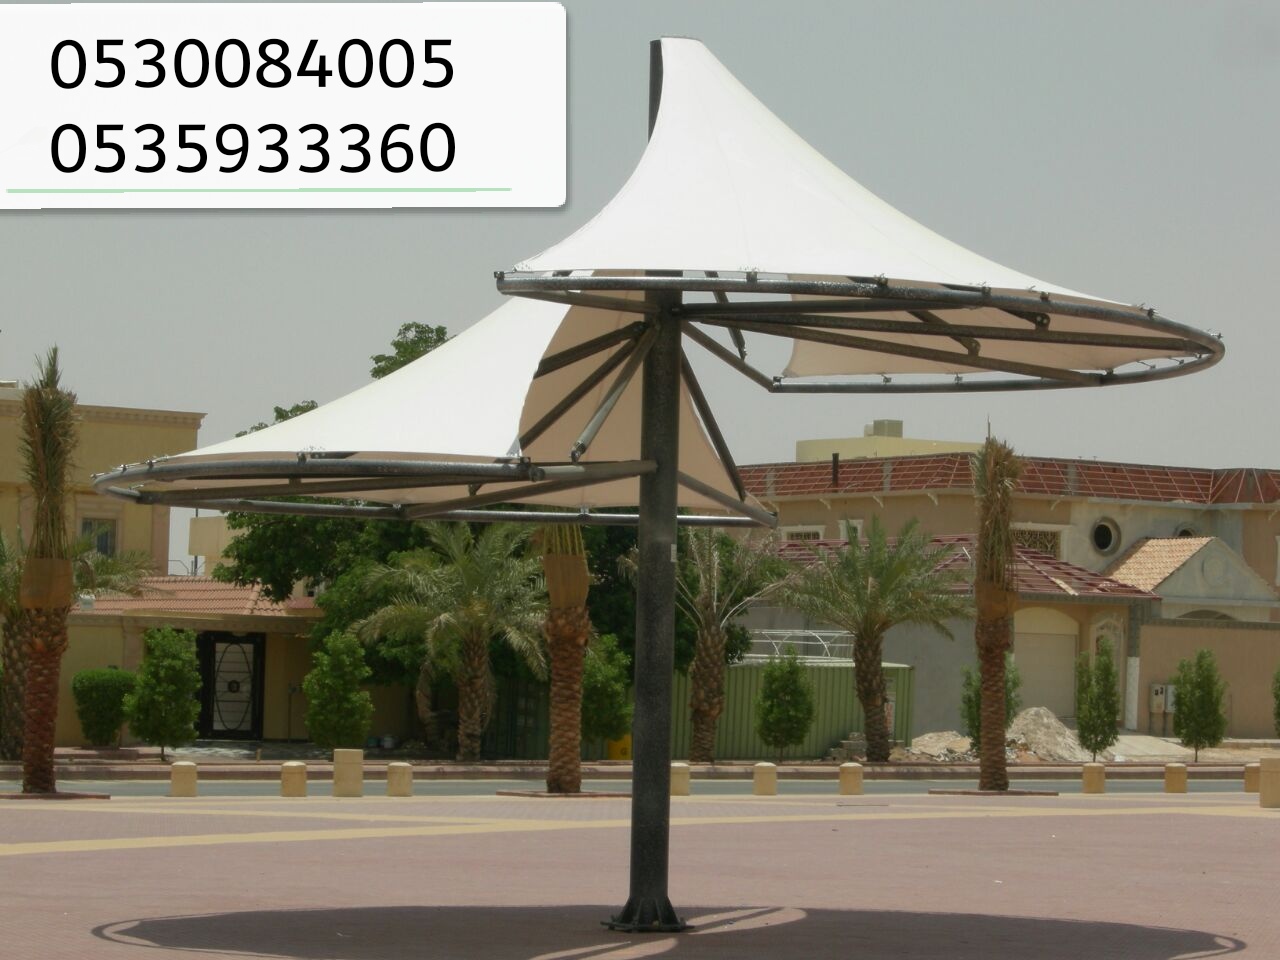 مؤسسة رواق المستقبل لبيع الحواجز الخرسانية والمصدات في الرياض 0530084005  P_1502ptydy1